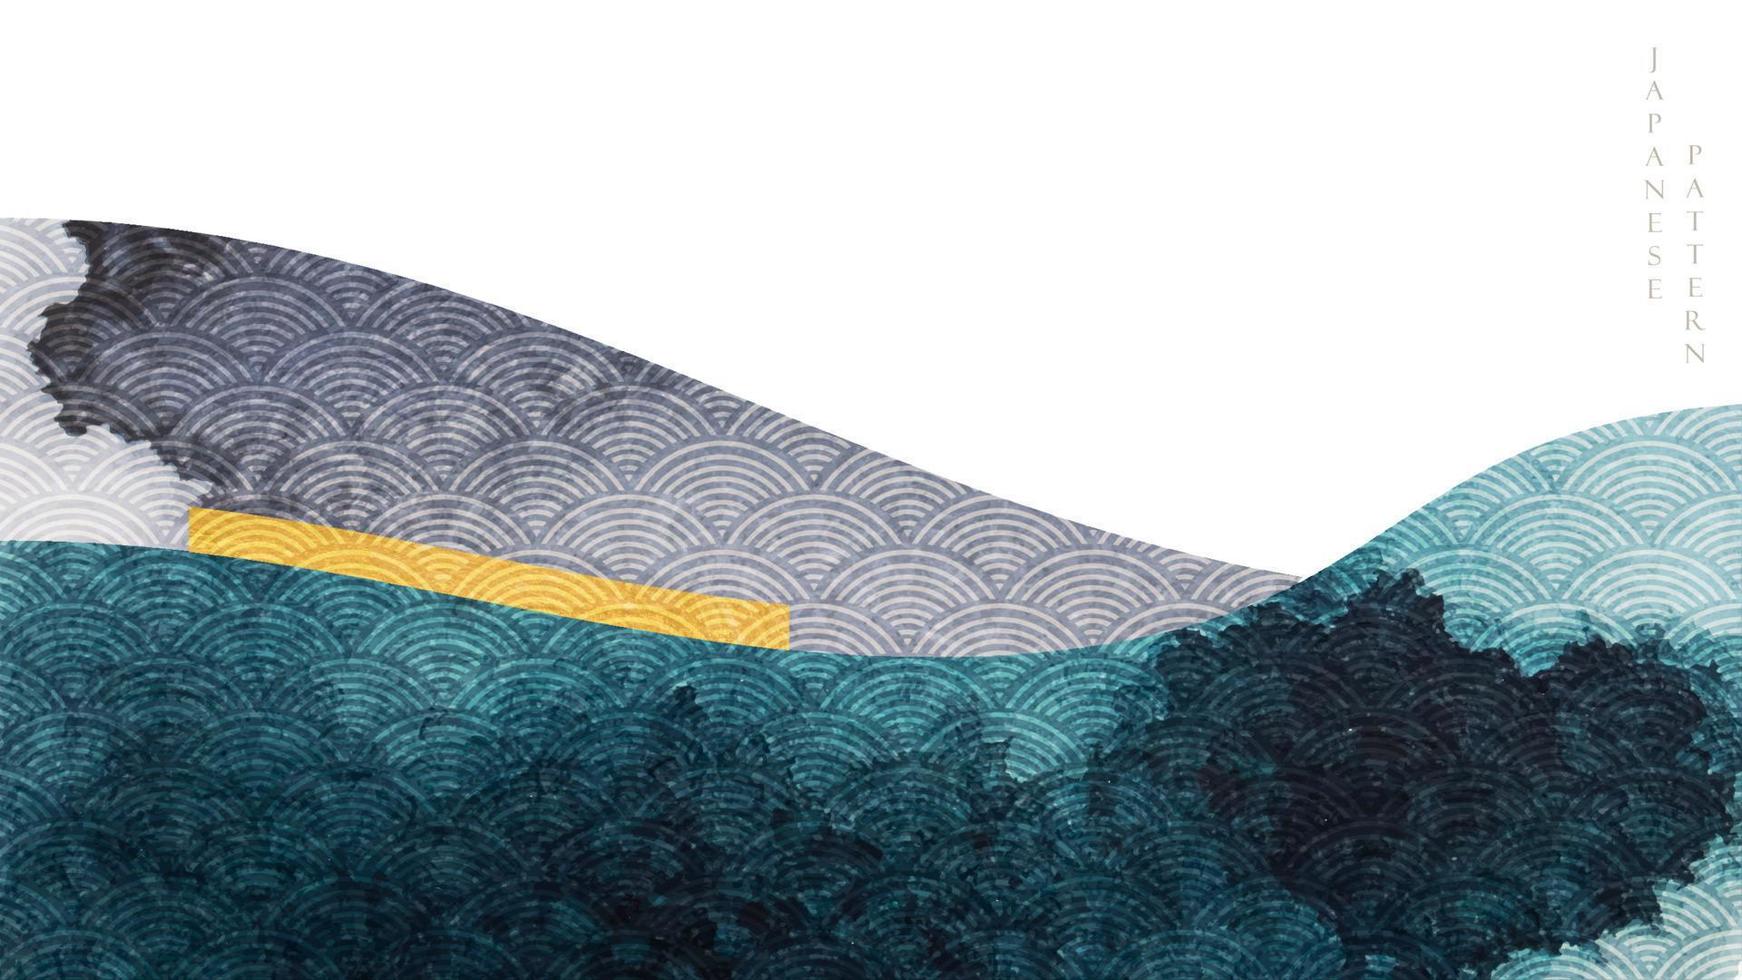 fond d'art abstrait avec vecteur de texture aquarelle. paysage de montagne avec motif de vague japonaise avec bannière d'éléments de mer océanique dans un style vintage.